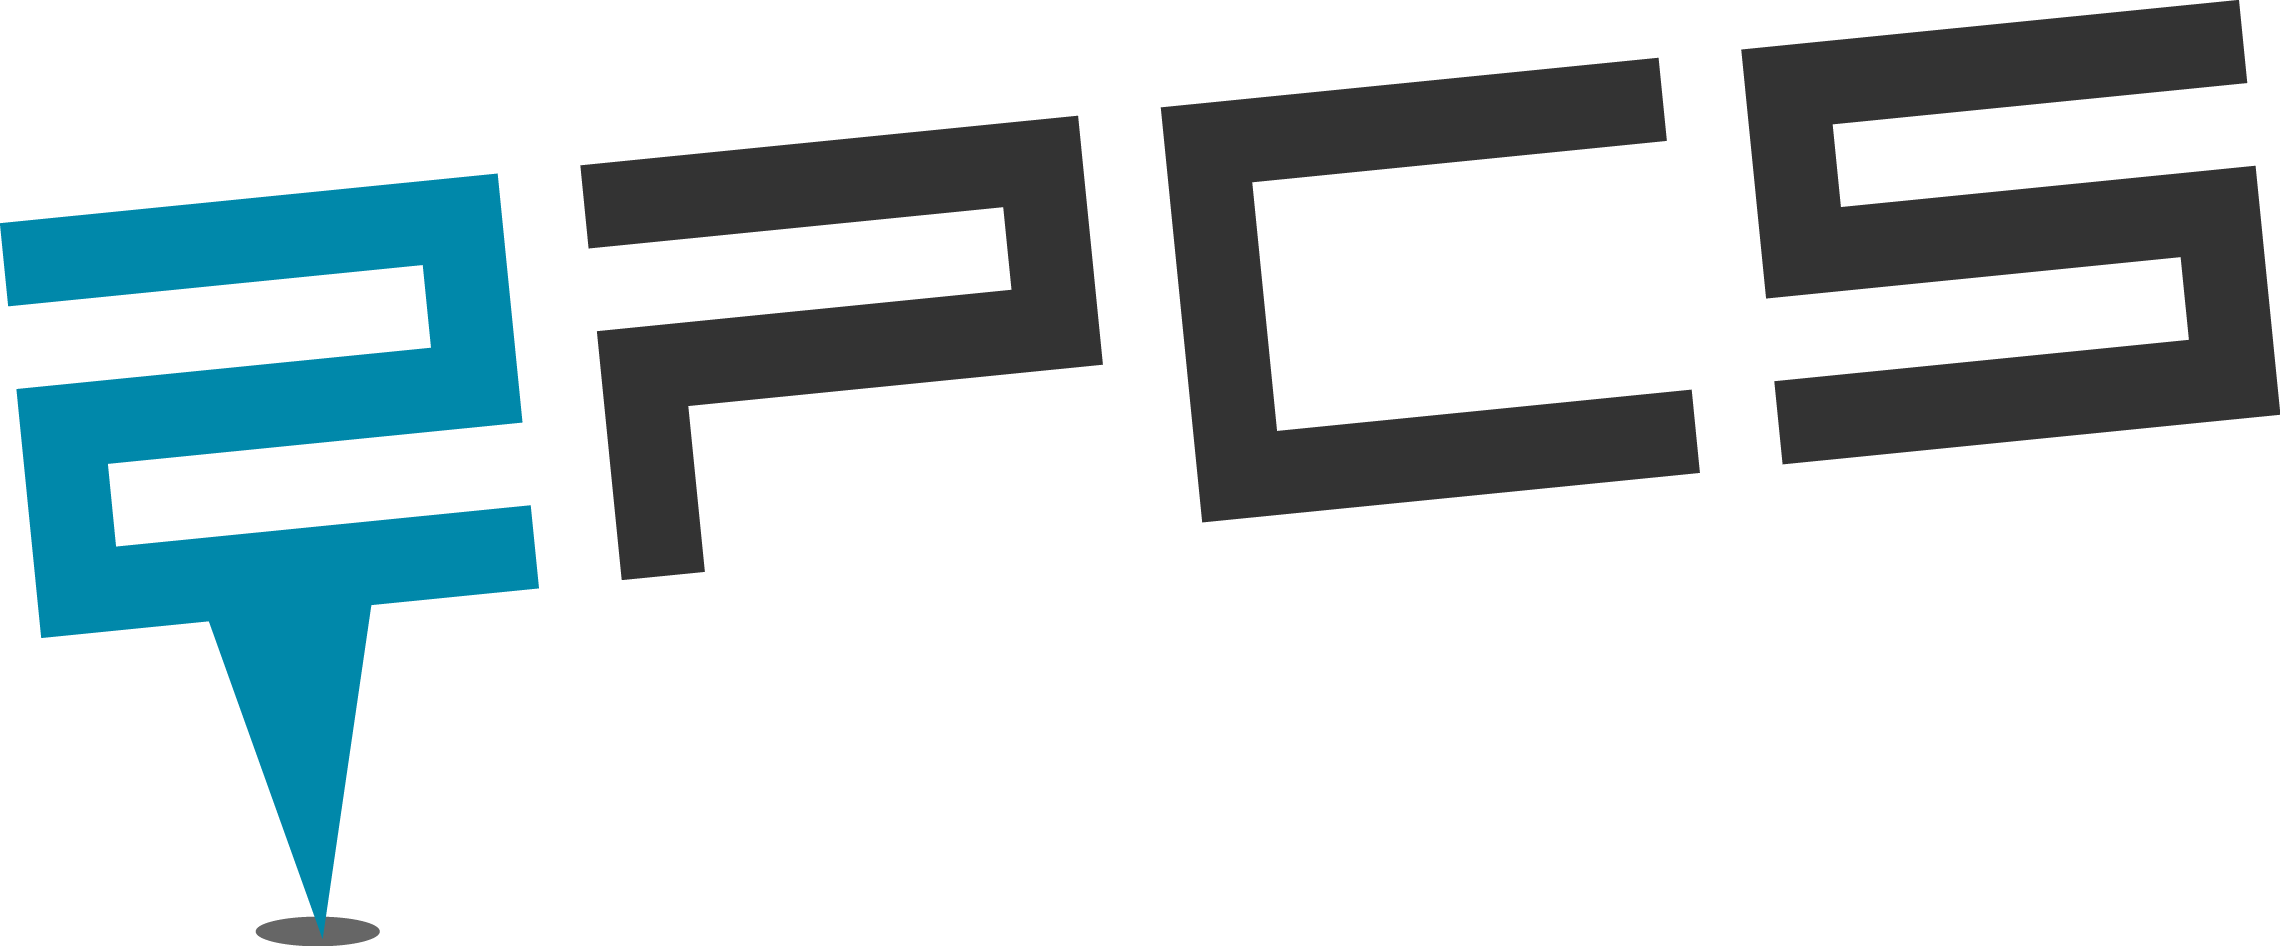 Логотип ПЦ. Лого Unify. Tele2 логотип. PC logo. Set partner